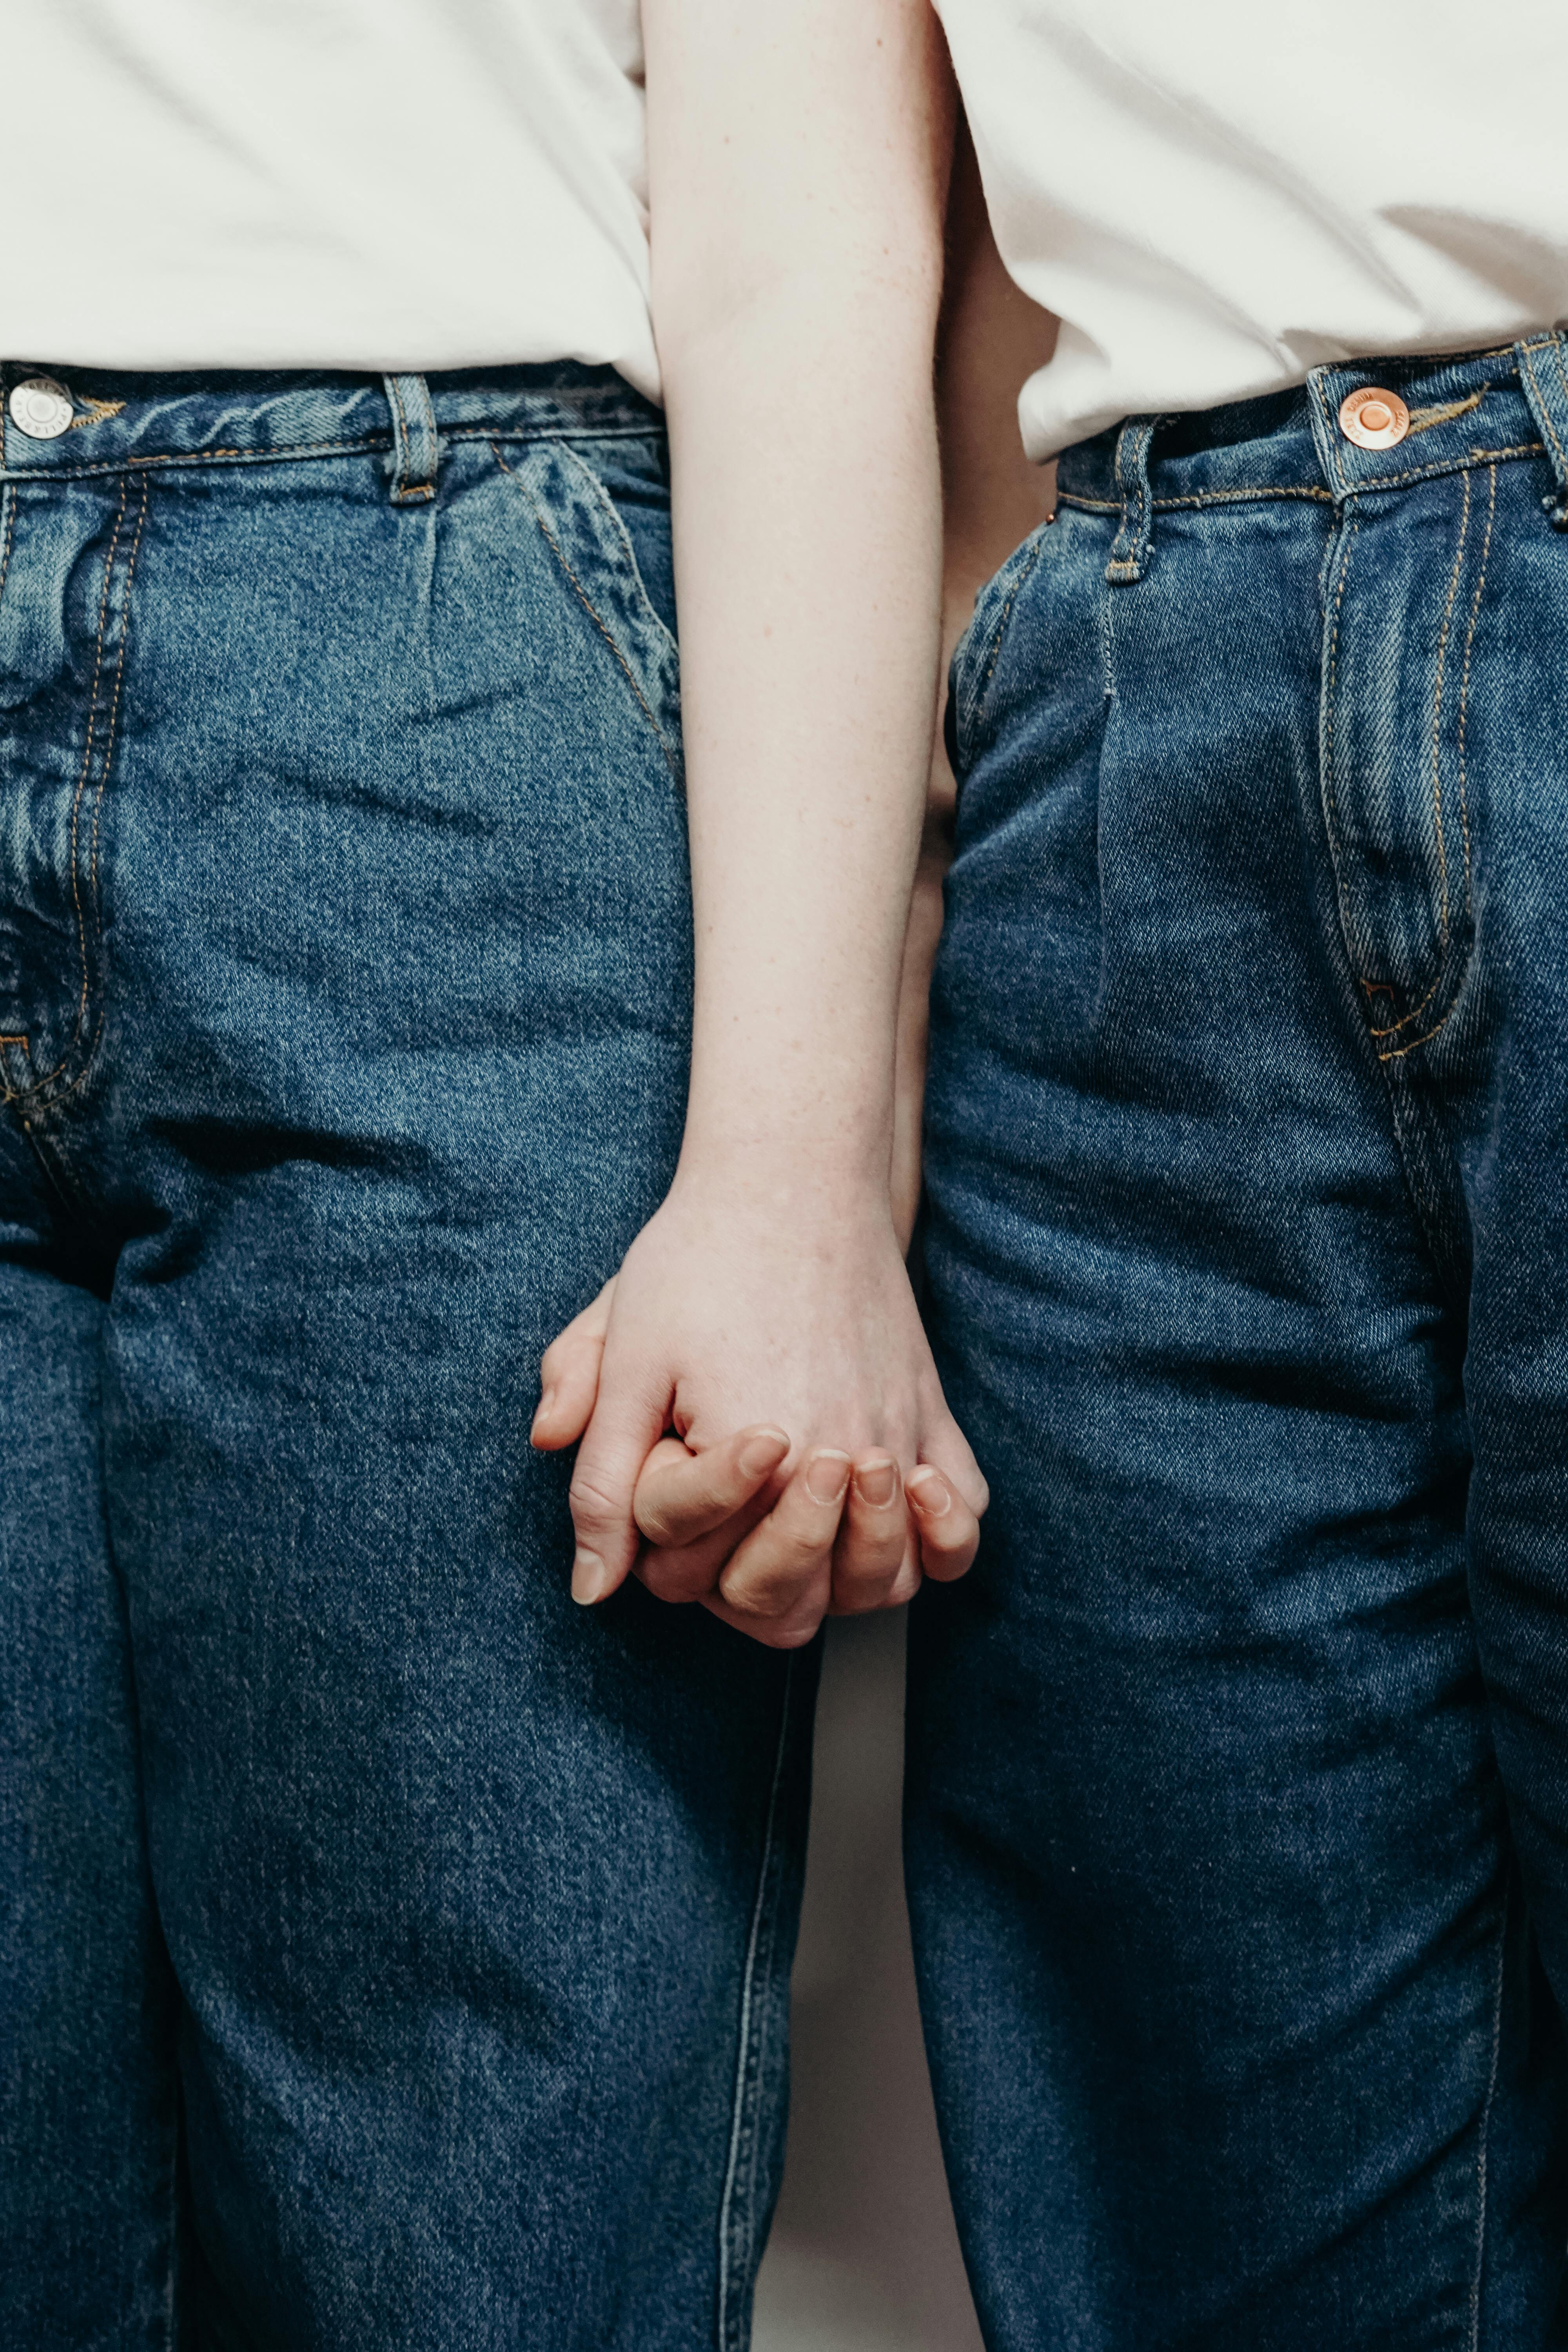 Deux jeunes femmes se tenant la main | Source : cottonbro studio on Pexels